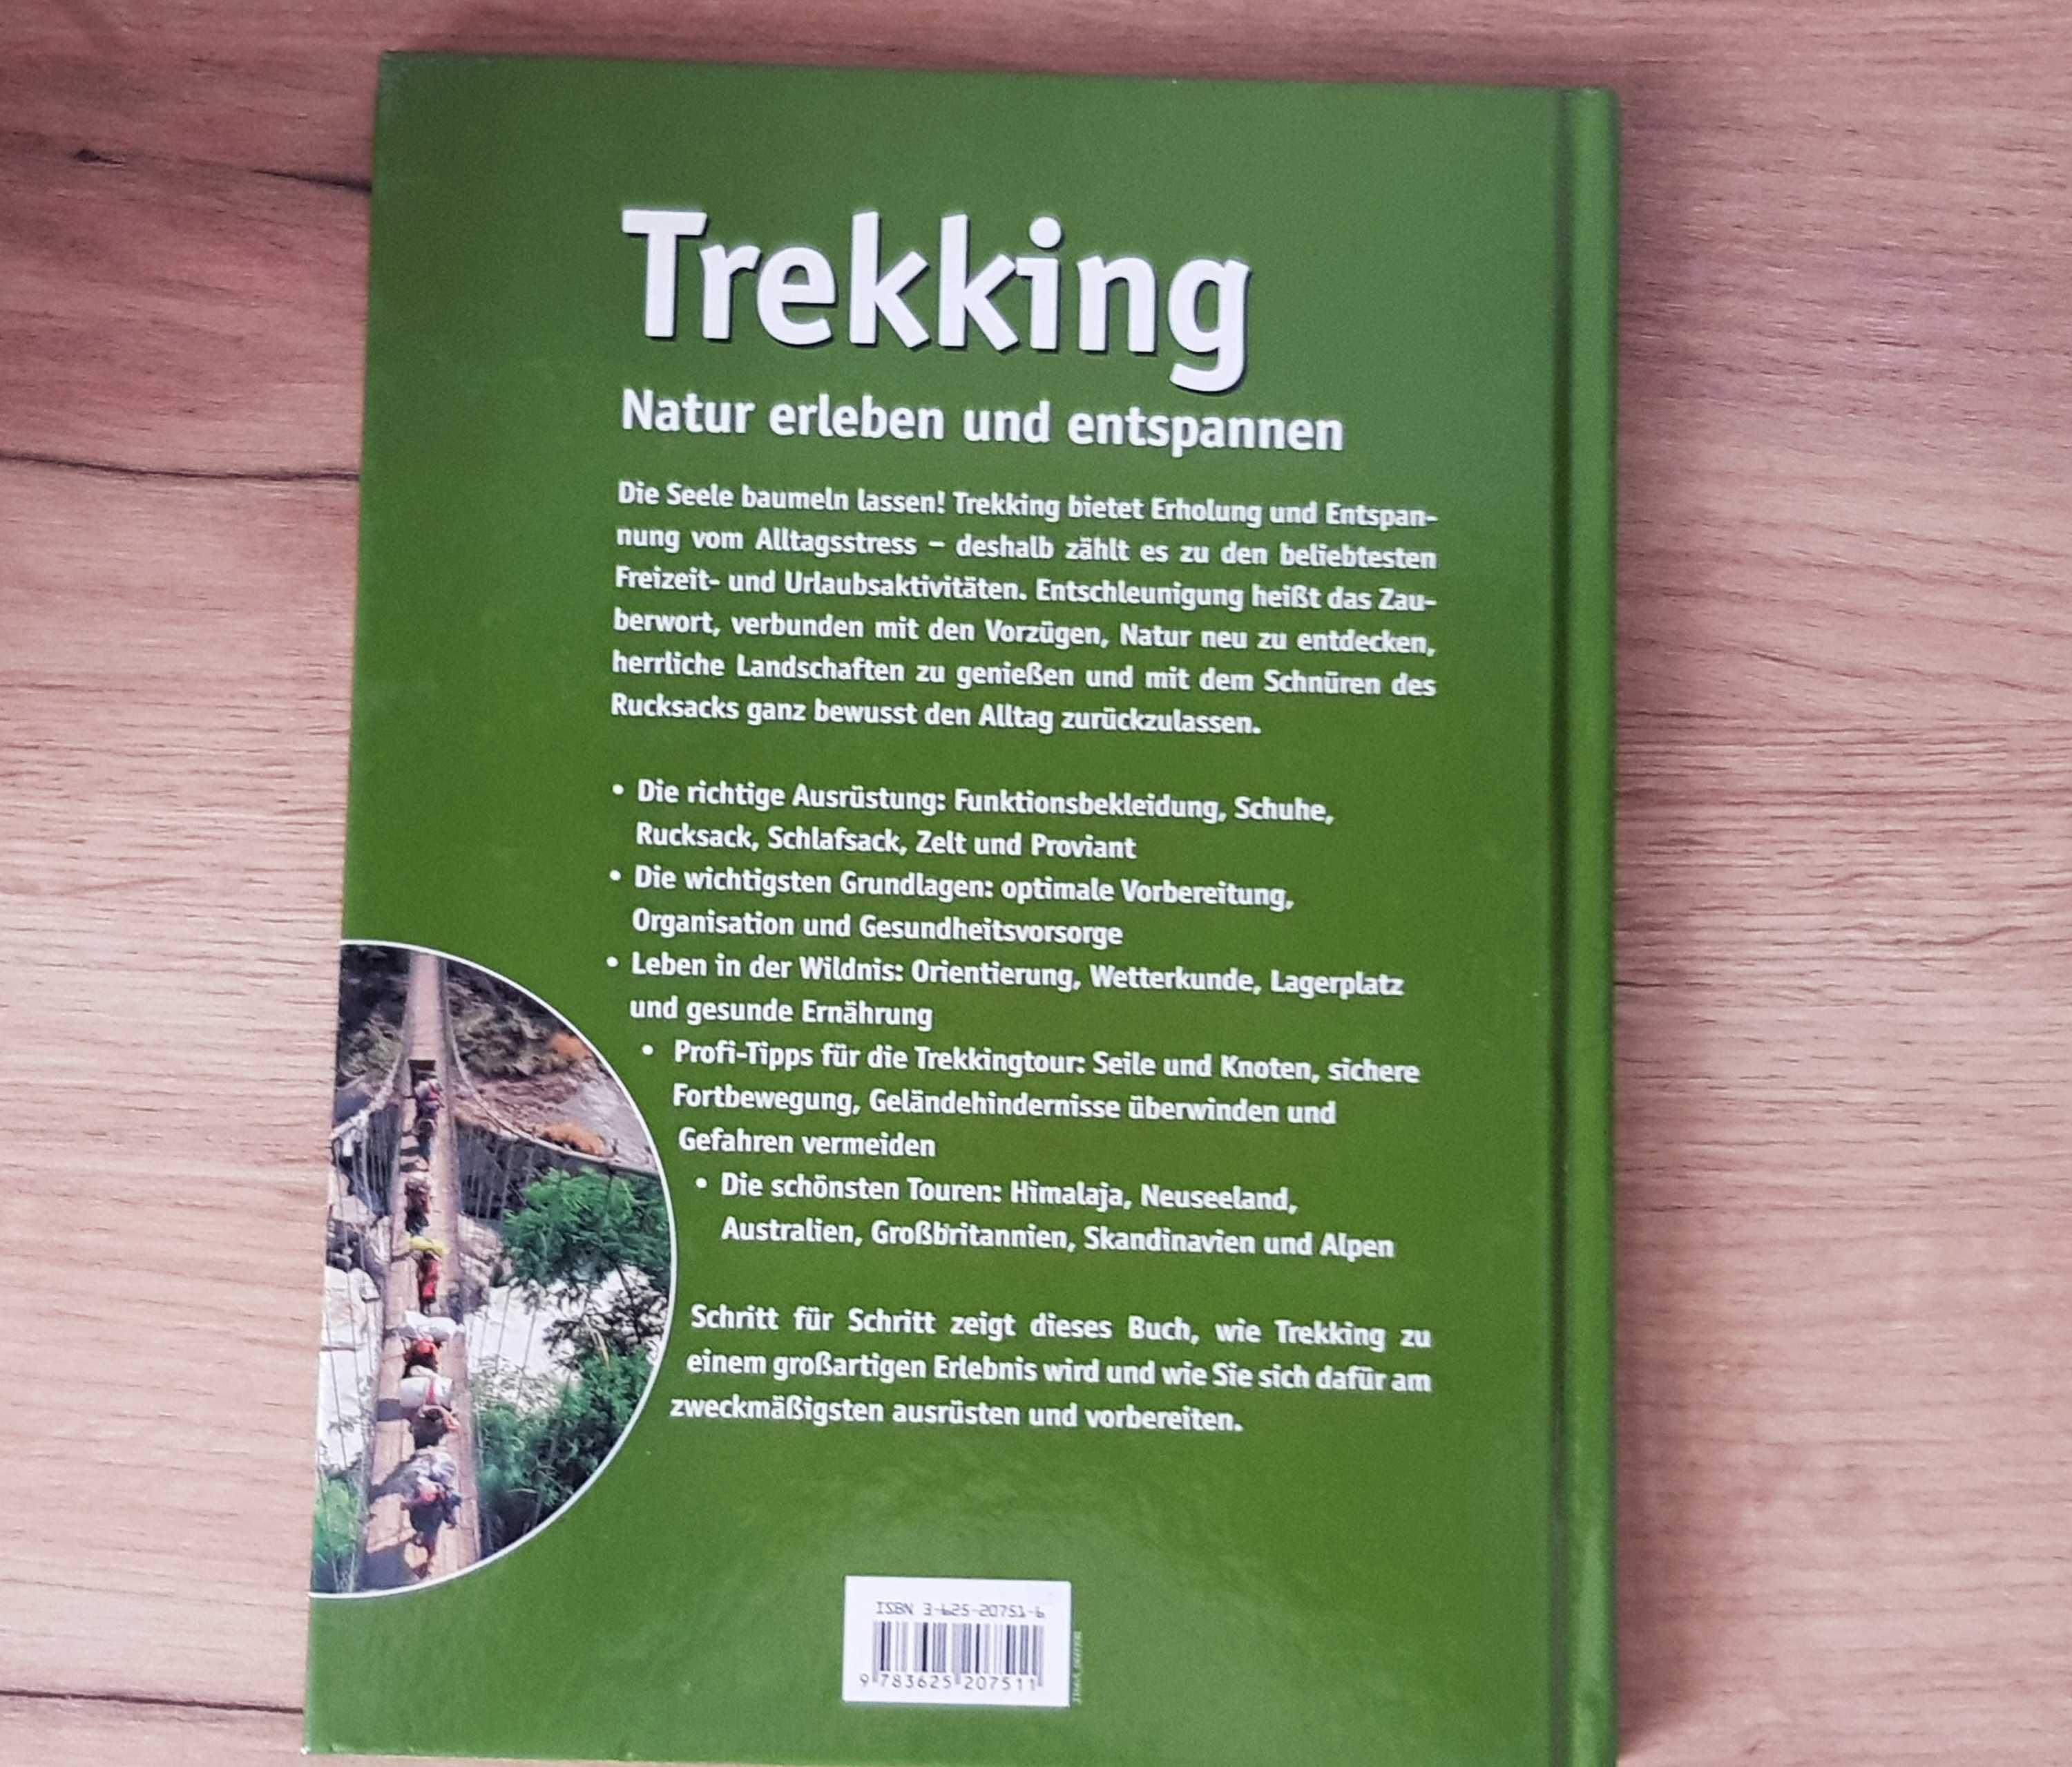 Trekking - enciclopedie in limba germana